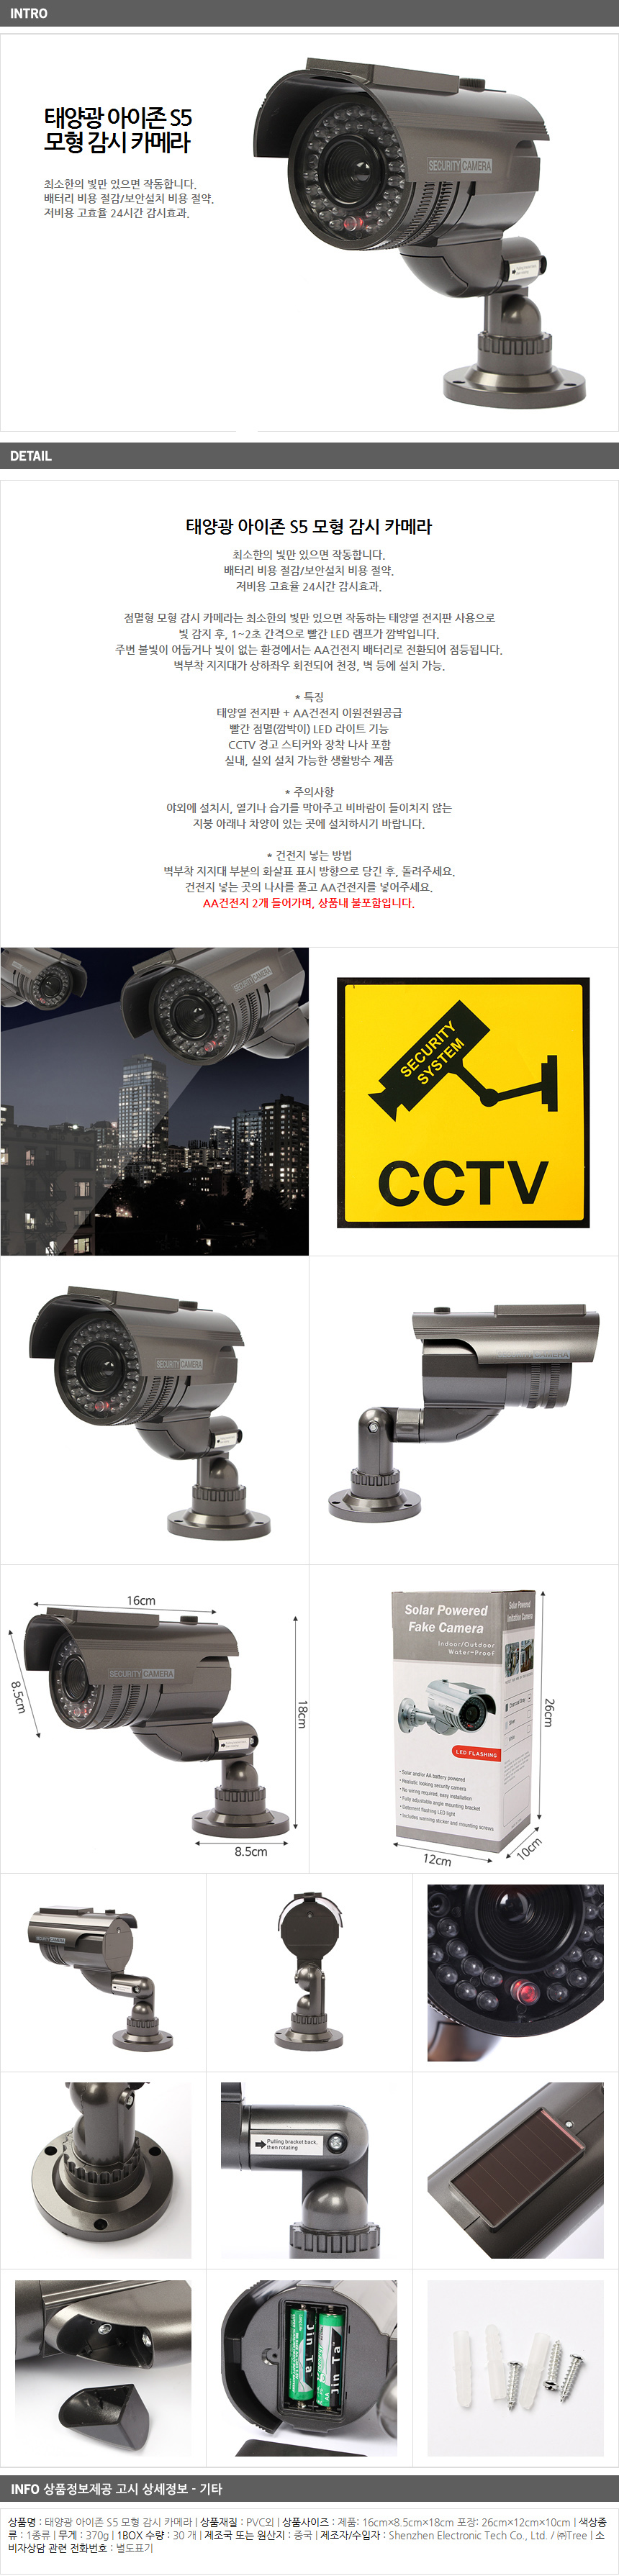 태양열 S5 모형 감시 카메라/가정 모형CCTV 방범